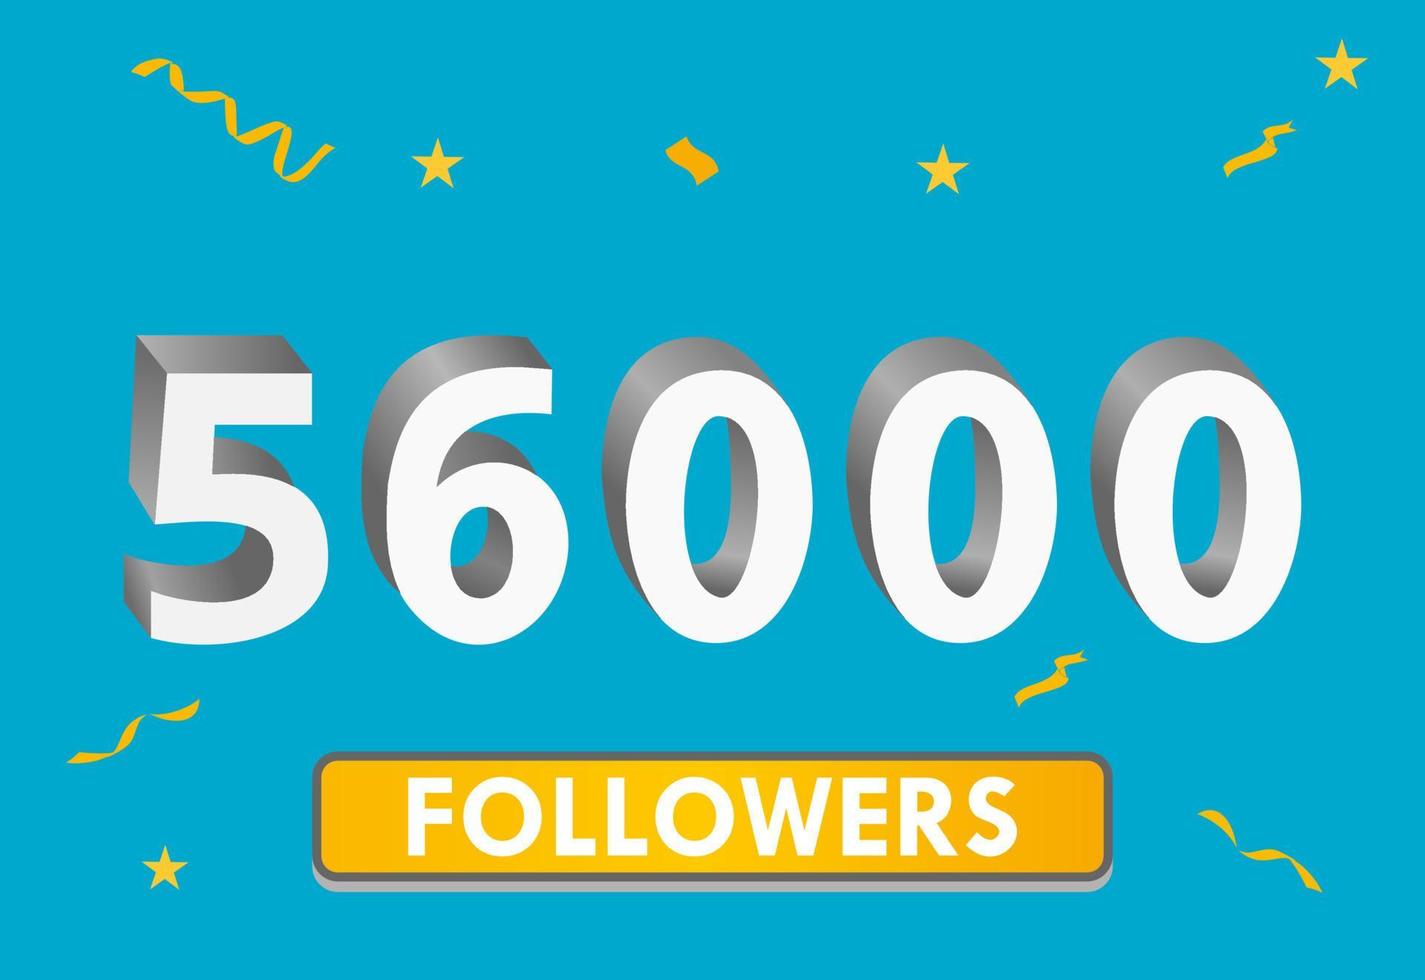 illustration numéros 3d pour les médias sociaux 56k aime merci, célébrant les fans des abonnés. bannière avec 56000 followers vecteur